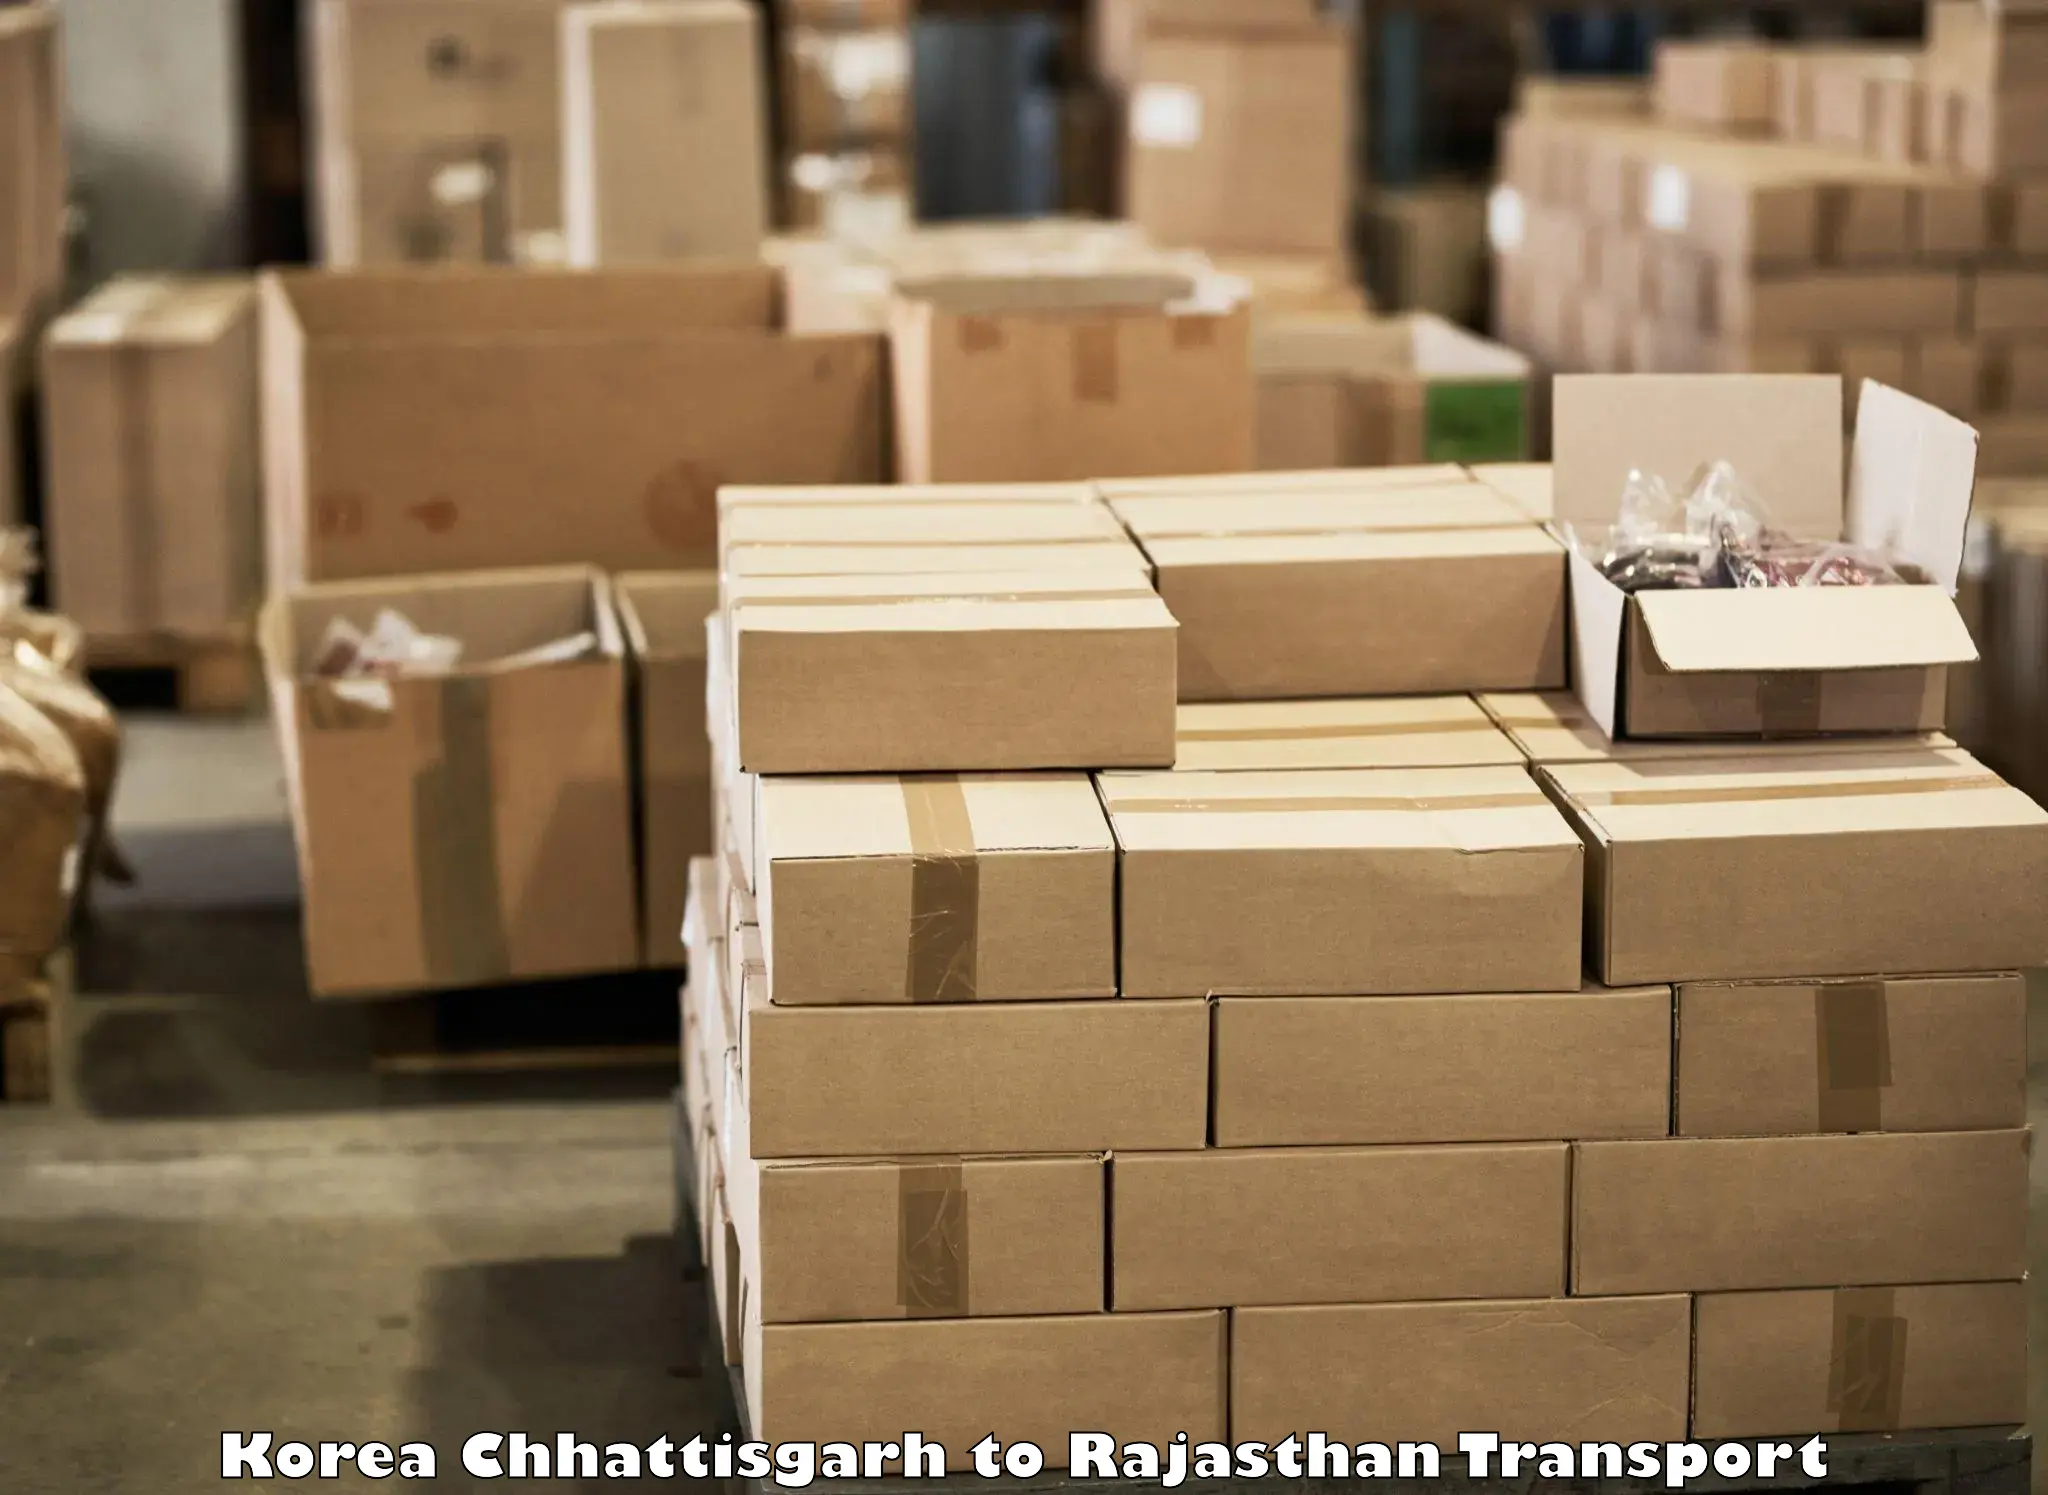 Shipping services Korea Chhattisgarh to Jaipur